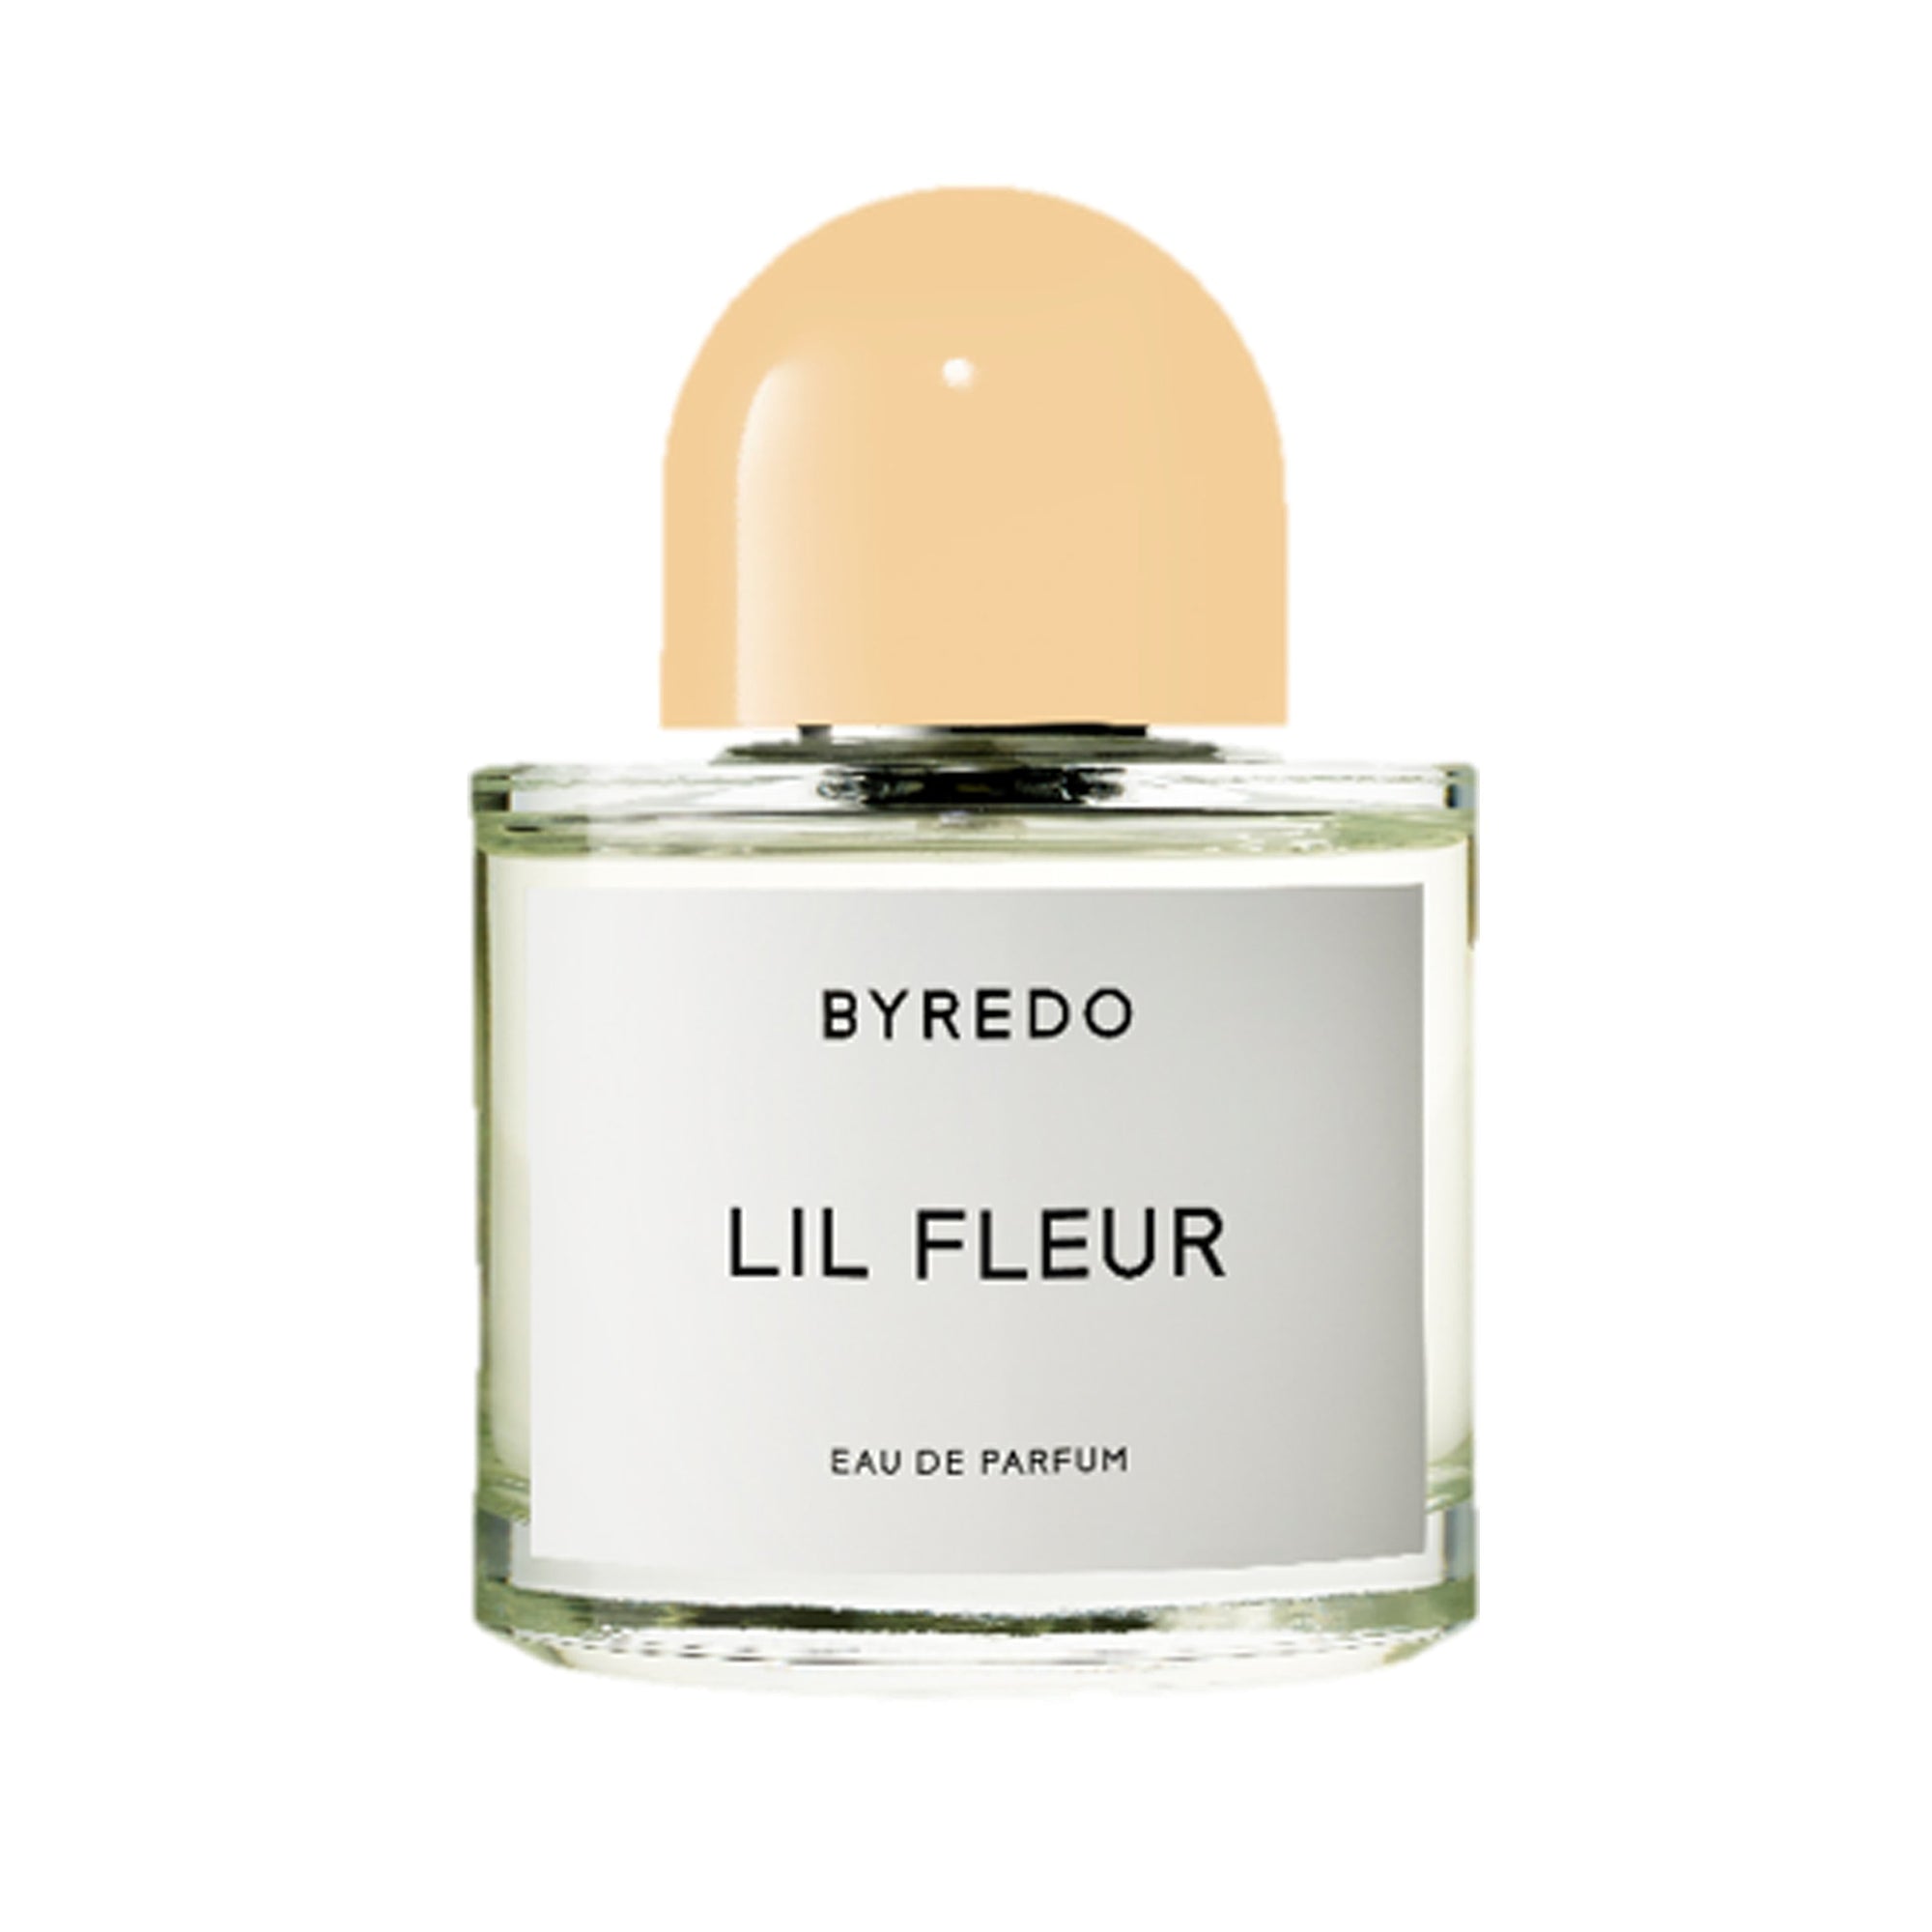 BYREDO - Eau de Parfum 100Ml Lil Fleur Blond Wood - (10000005) view 1